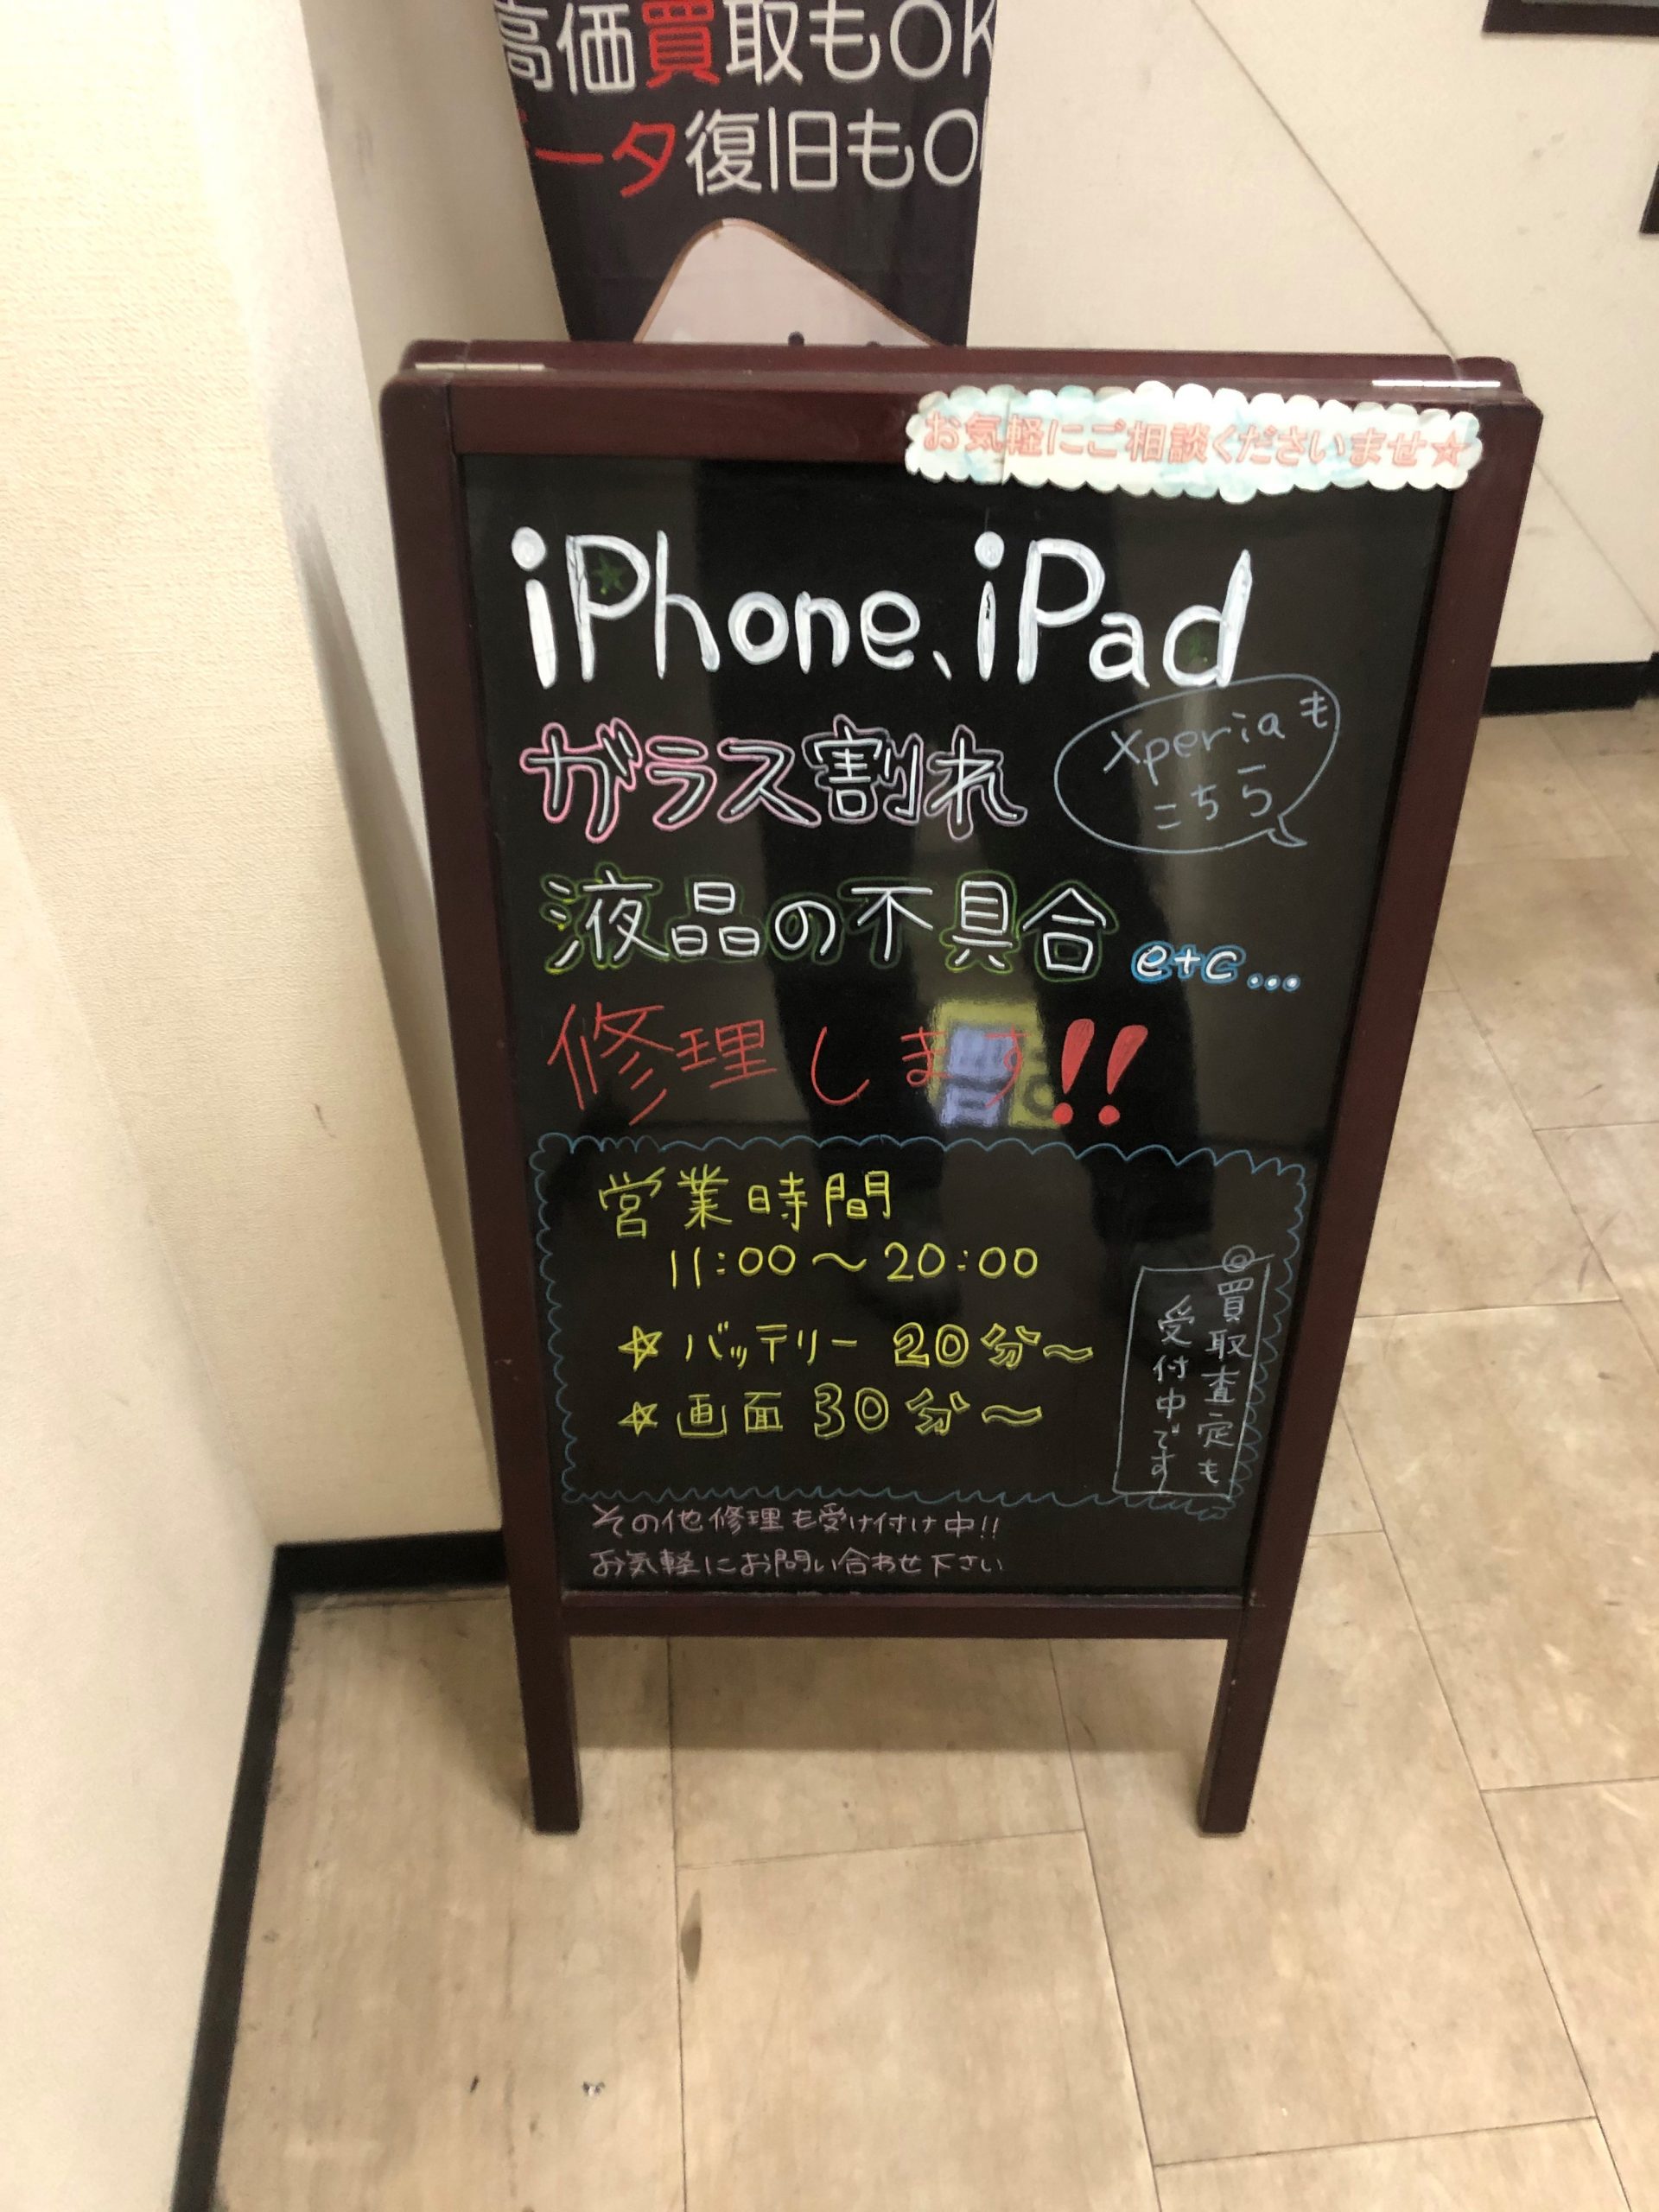 ☆iPhone修理ジャパン池袋店本日も20時まで営業中です☆